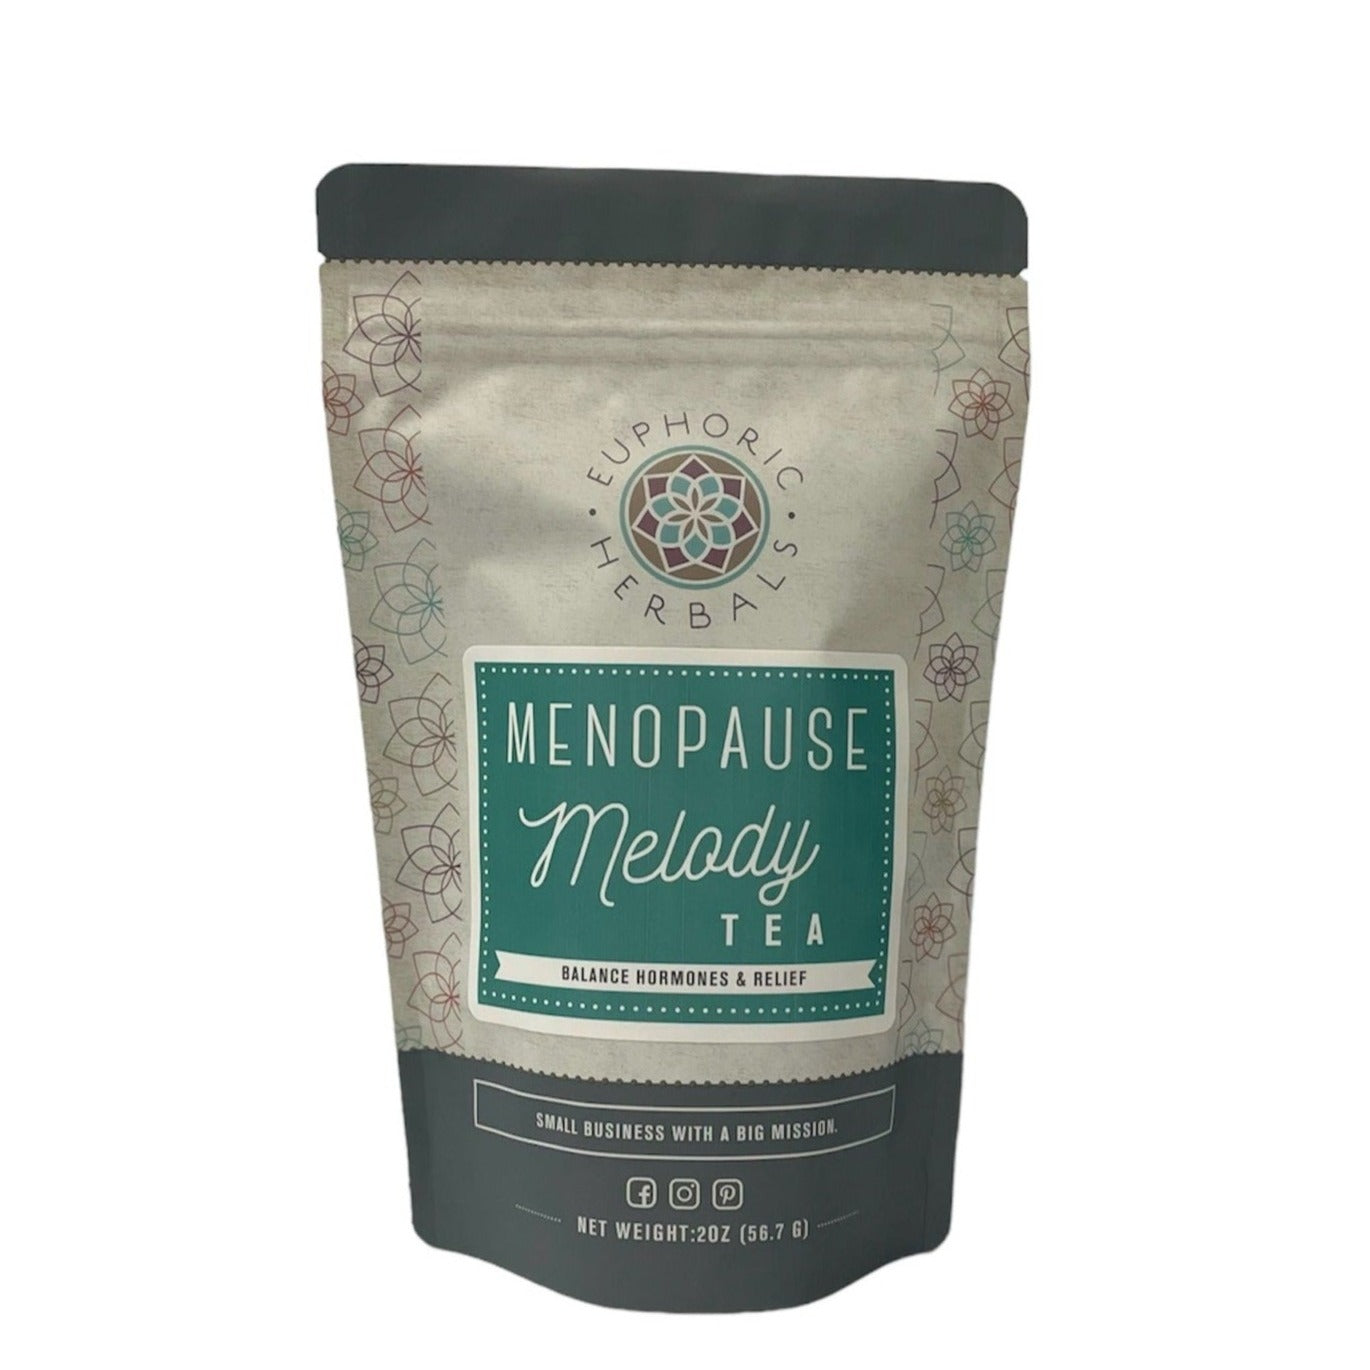 Menopause Melody Tea